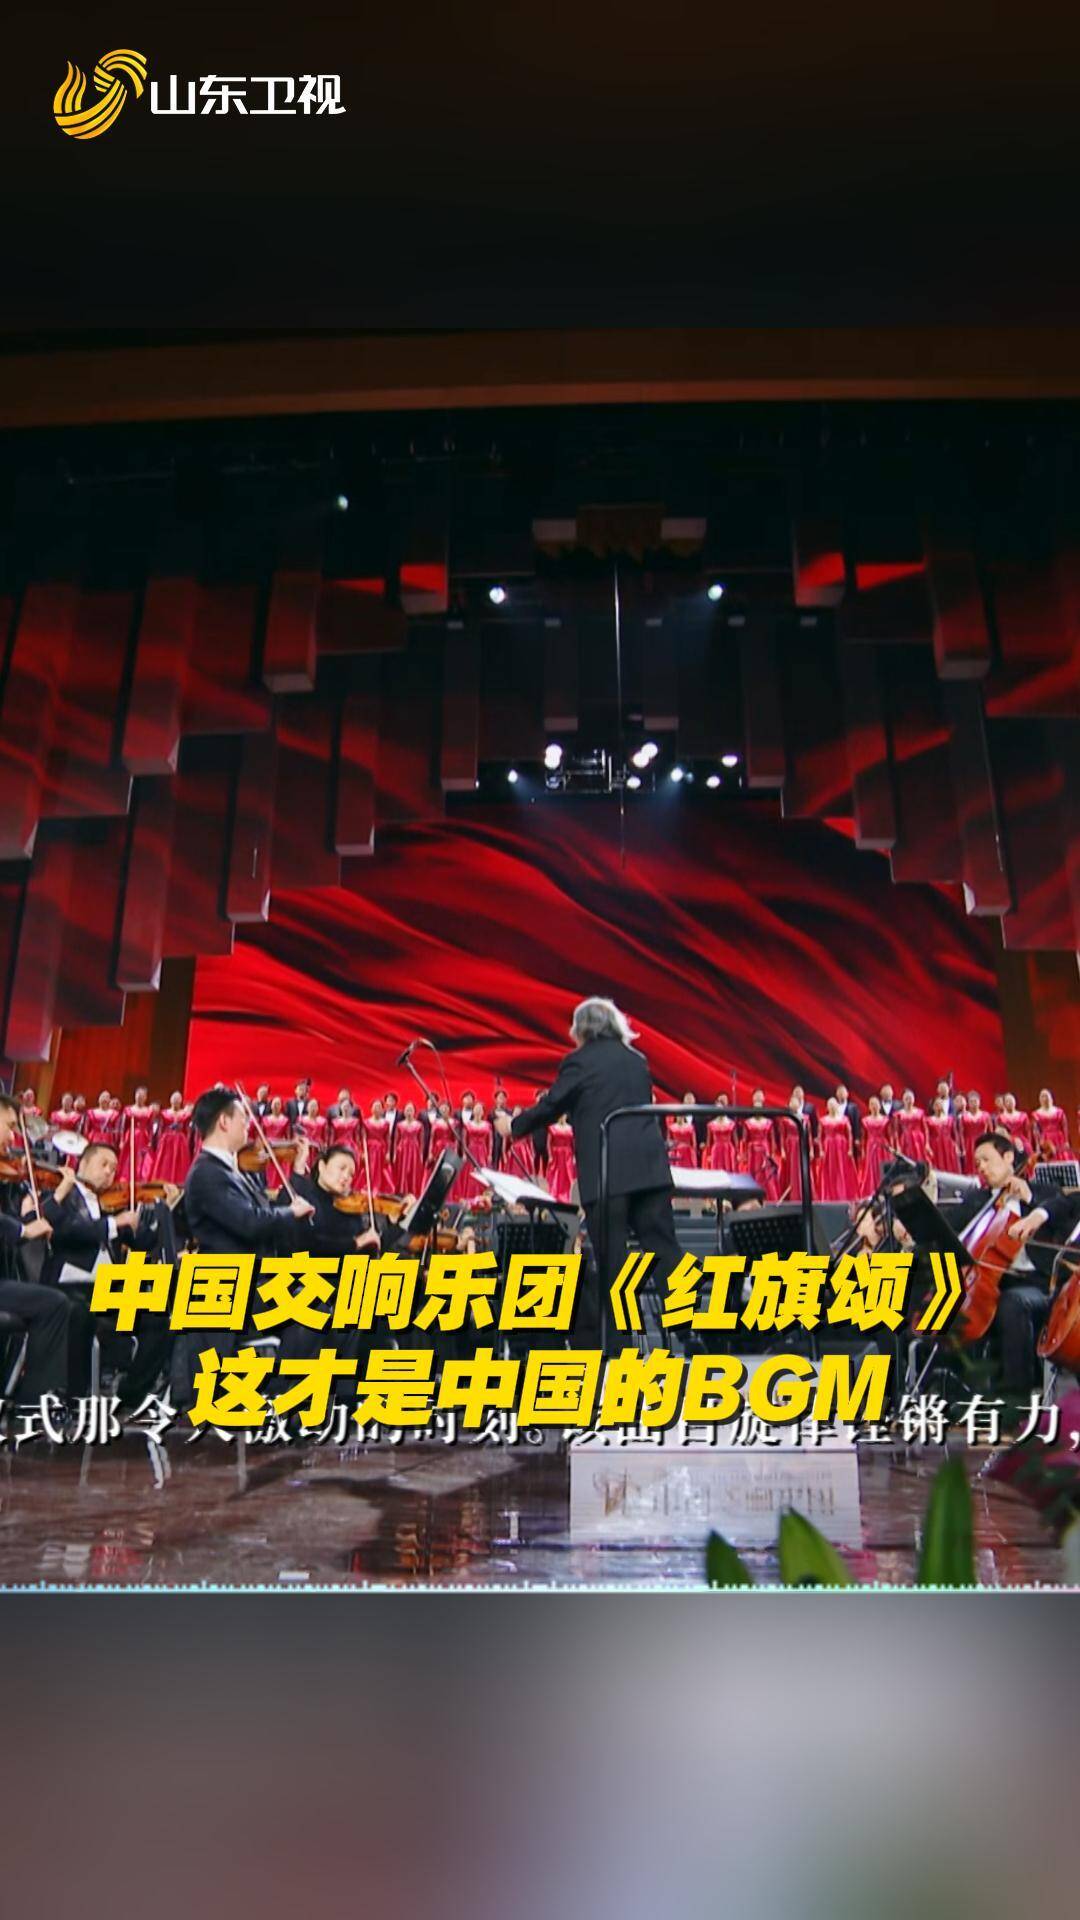 这才是中国的BGM！中国交响乐团史诗级交响乐《红旗颂》